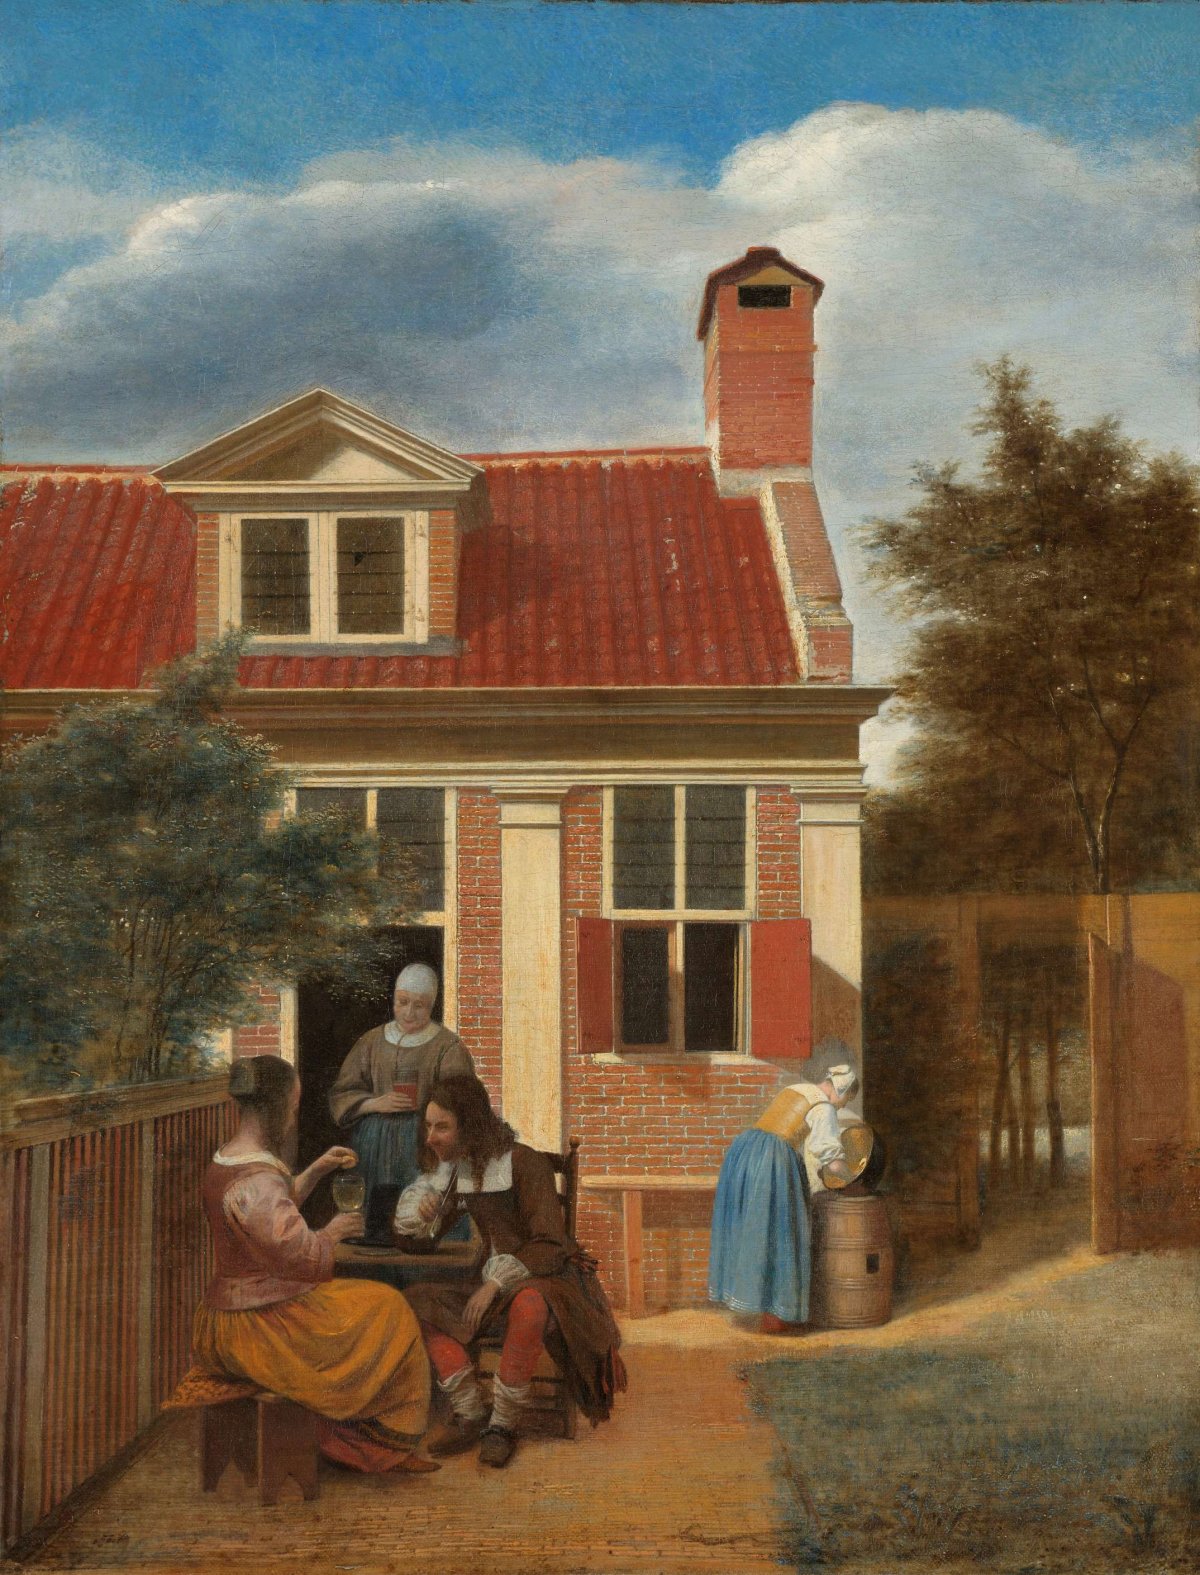 Figures in a Courtyard behind a House, Pieter de Hooch, c. 1663 - c. 1665